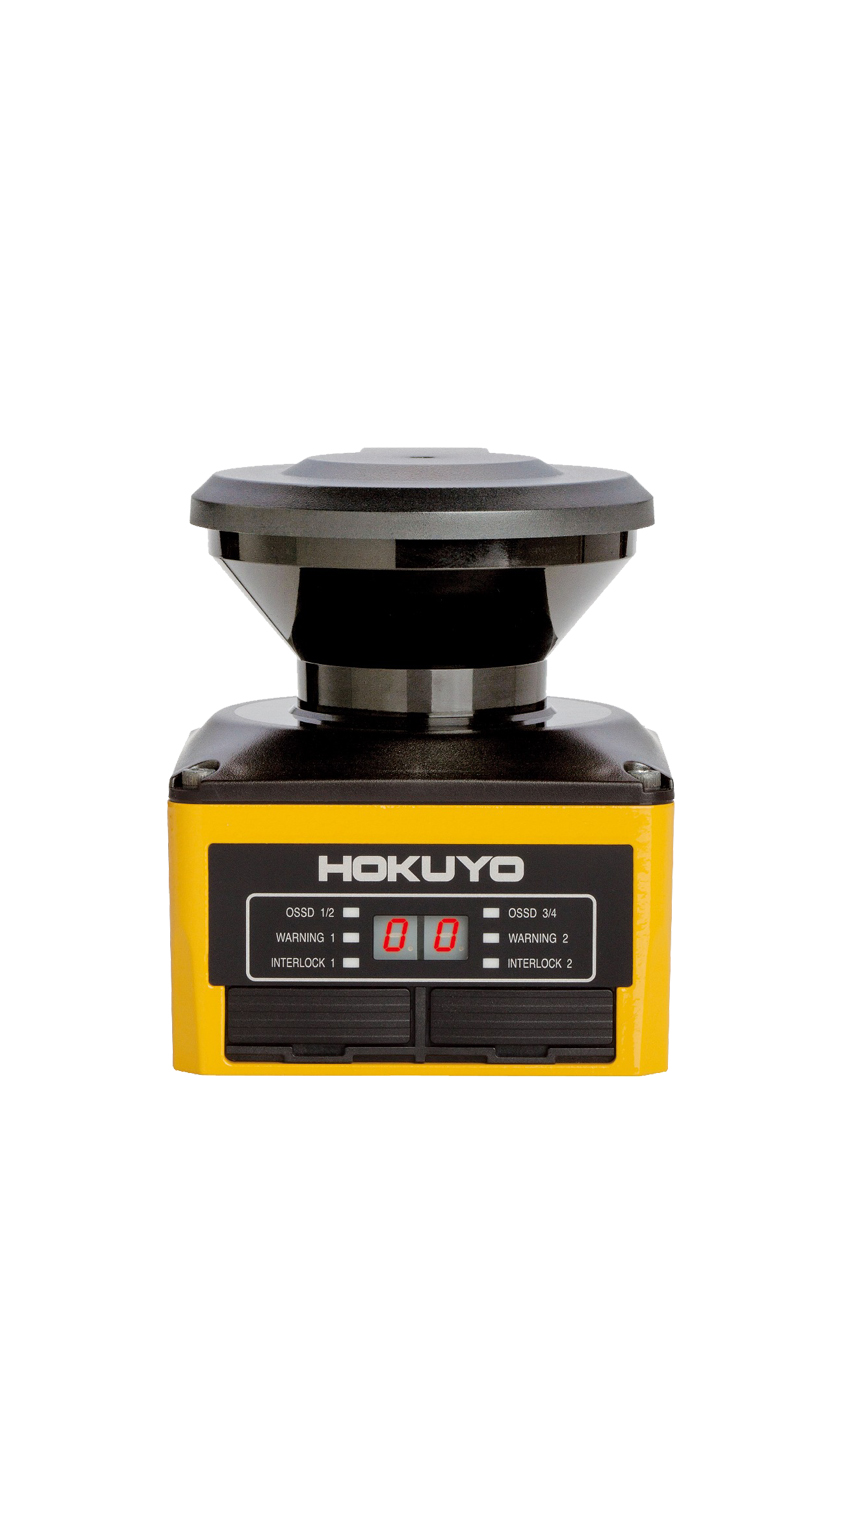 safety laser scanner hokuyo uam-05lp